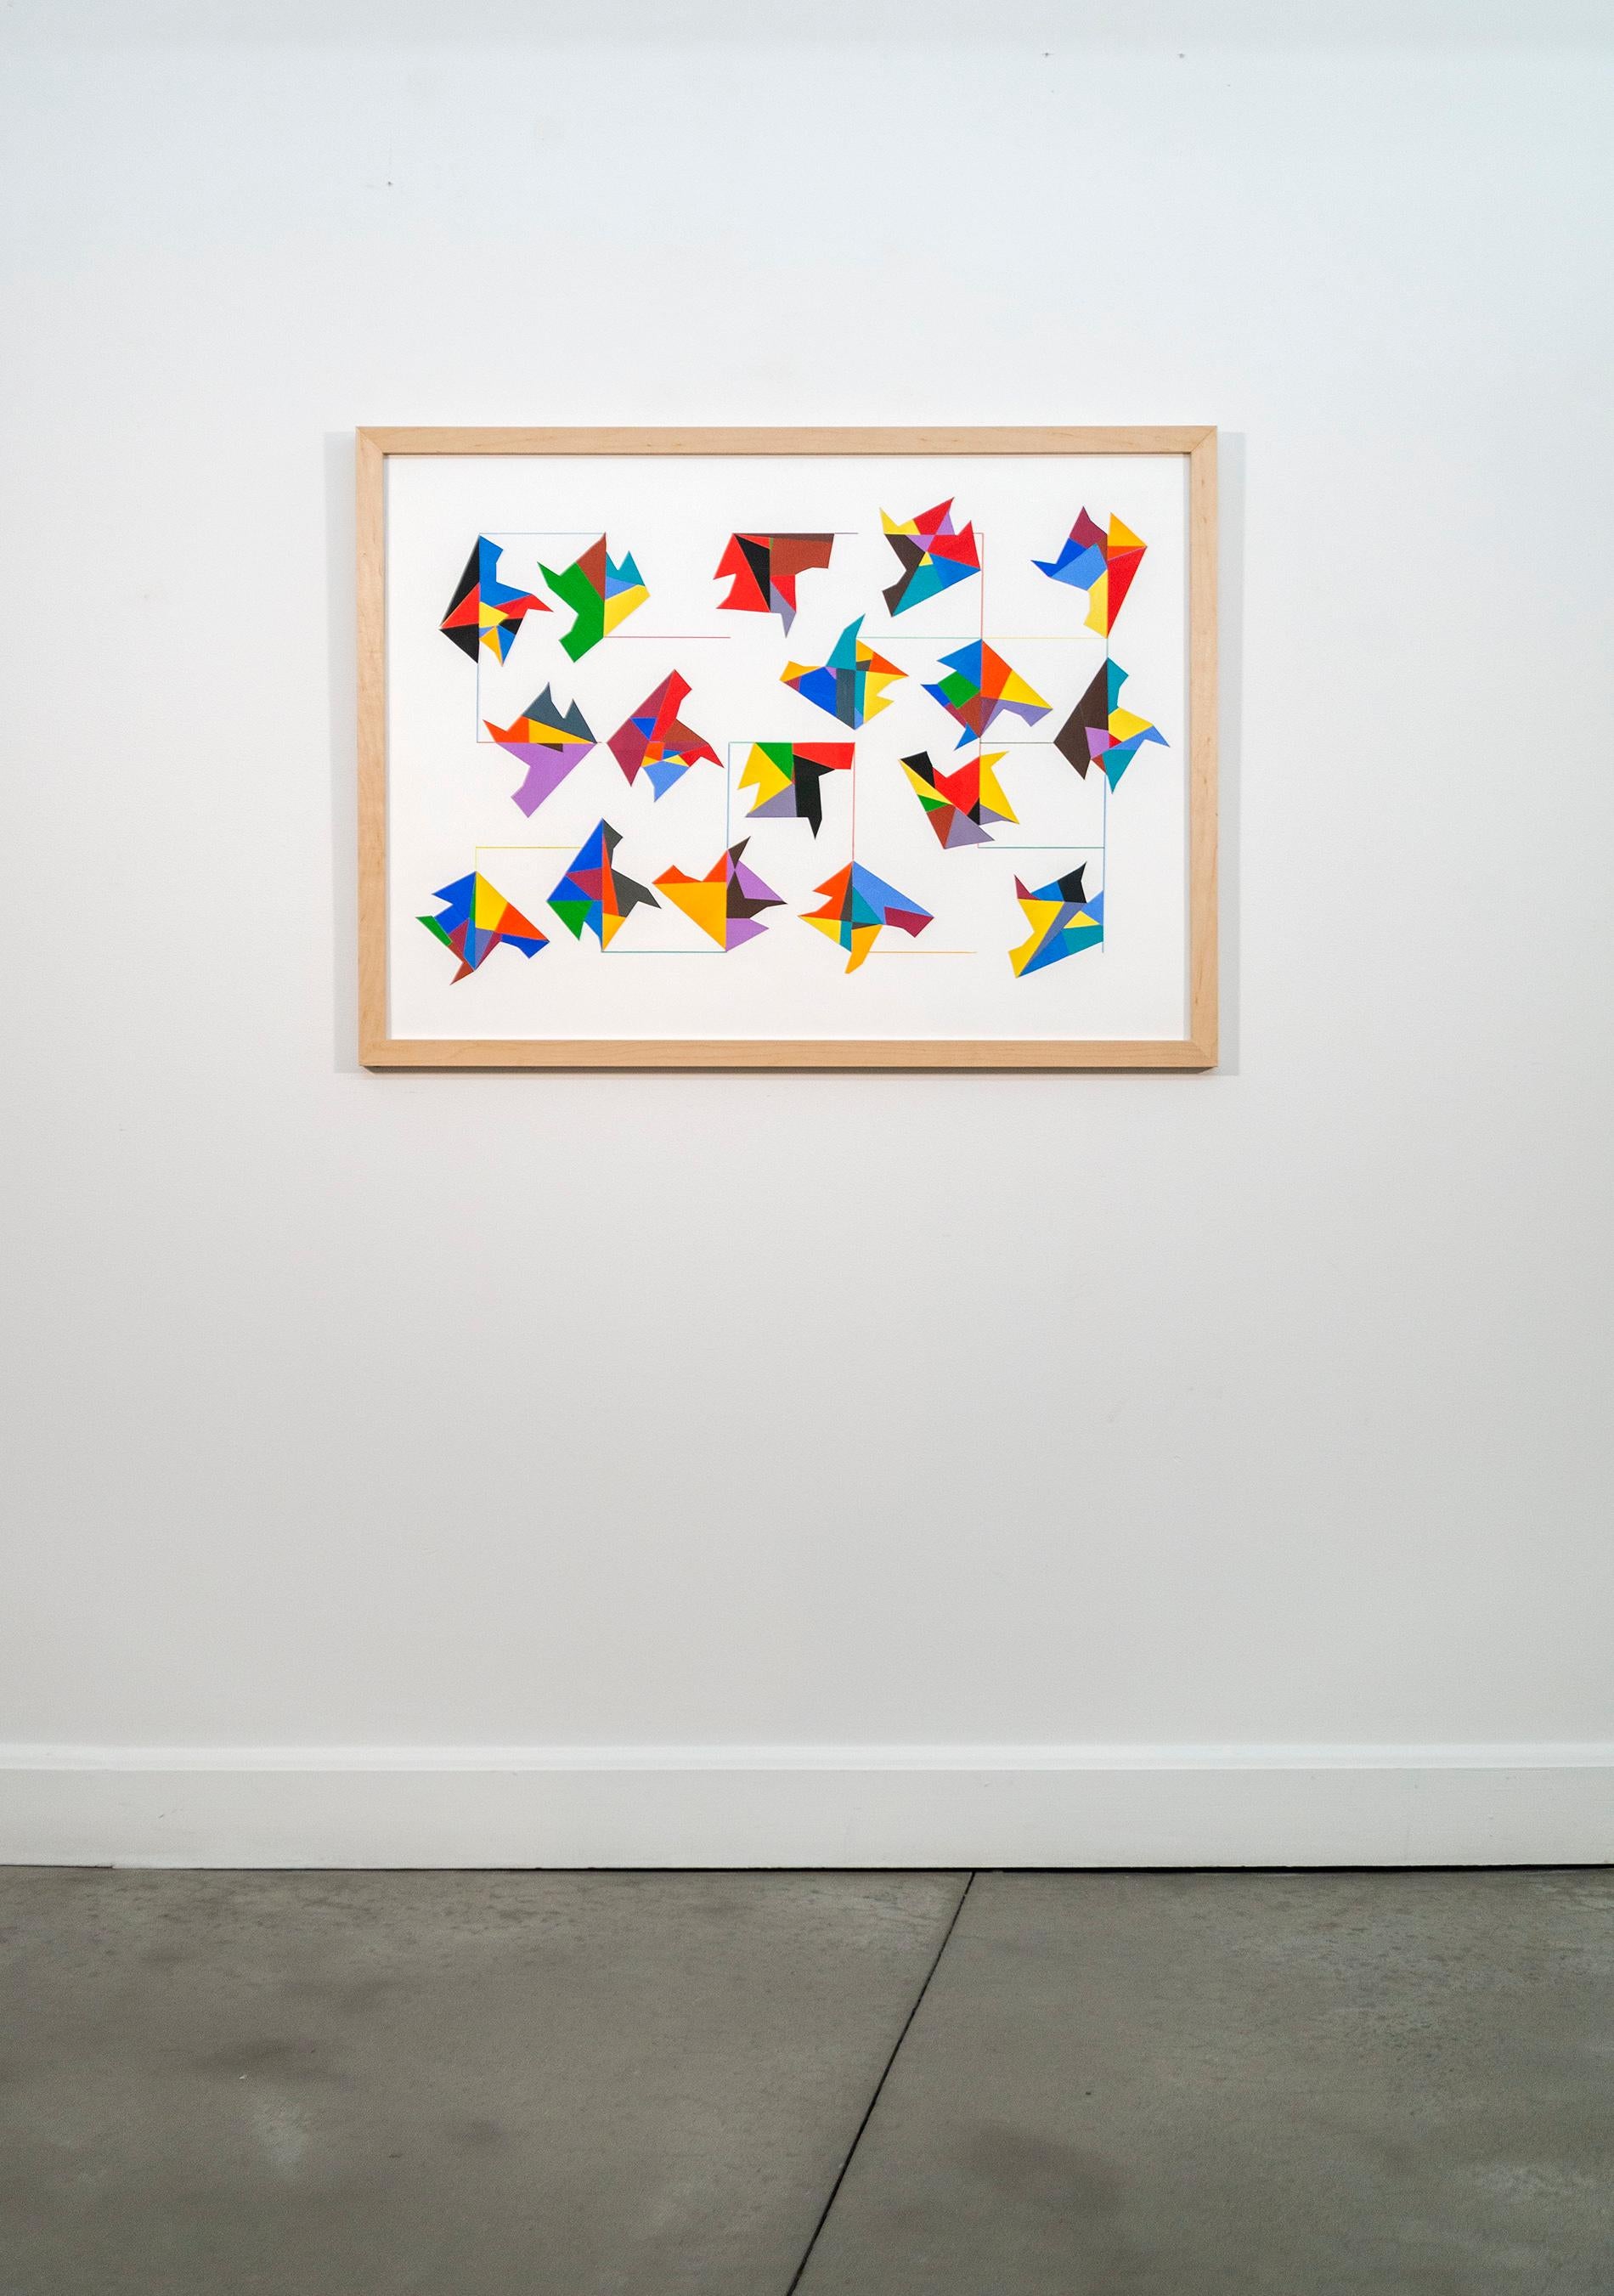 Interconnexions - collage de papier coloré, contemporain, abstrait géométrique - Painting de Yvonne Lammerich